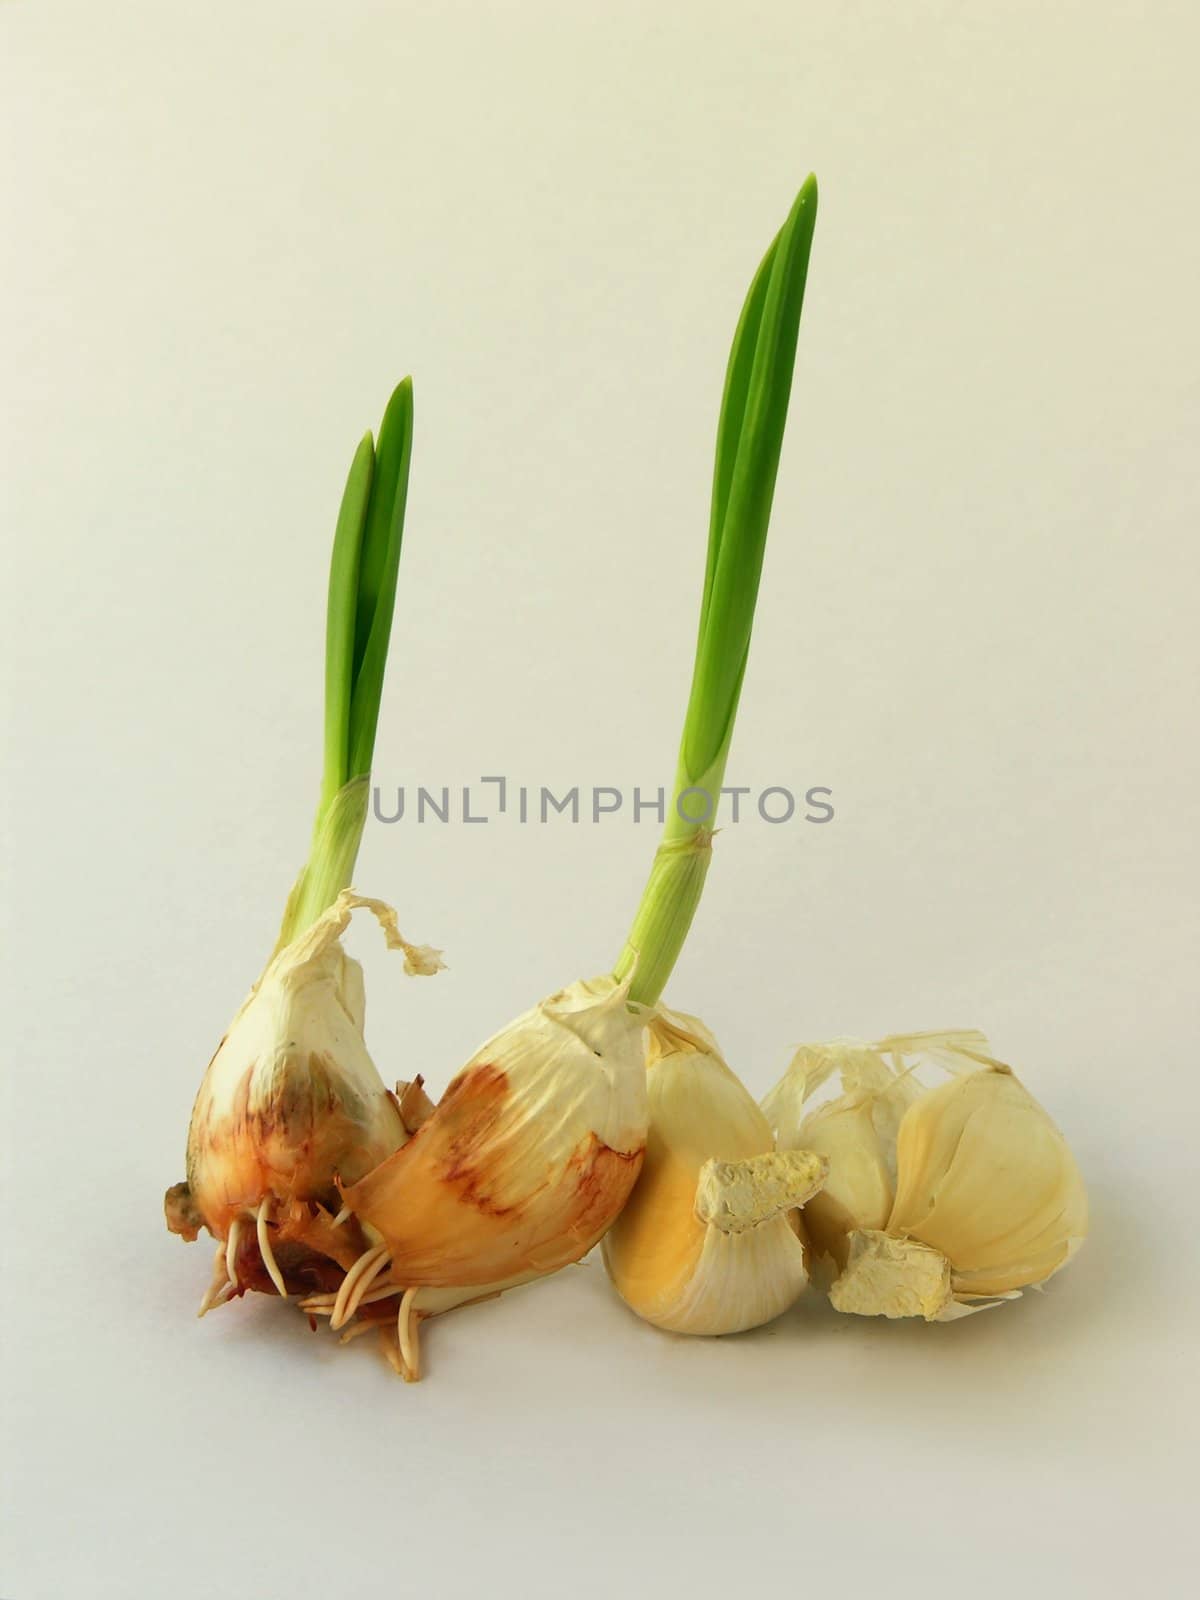 germination of garlic teeth by RAIMA